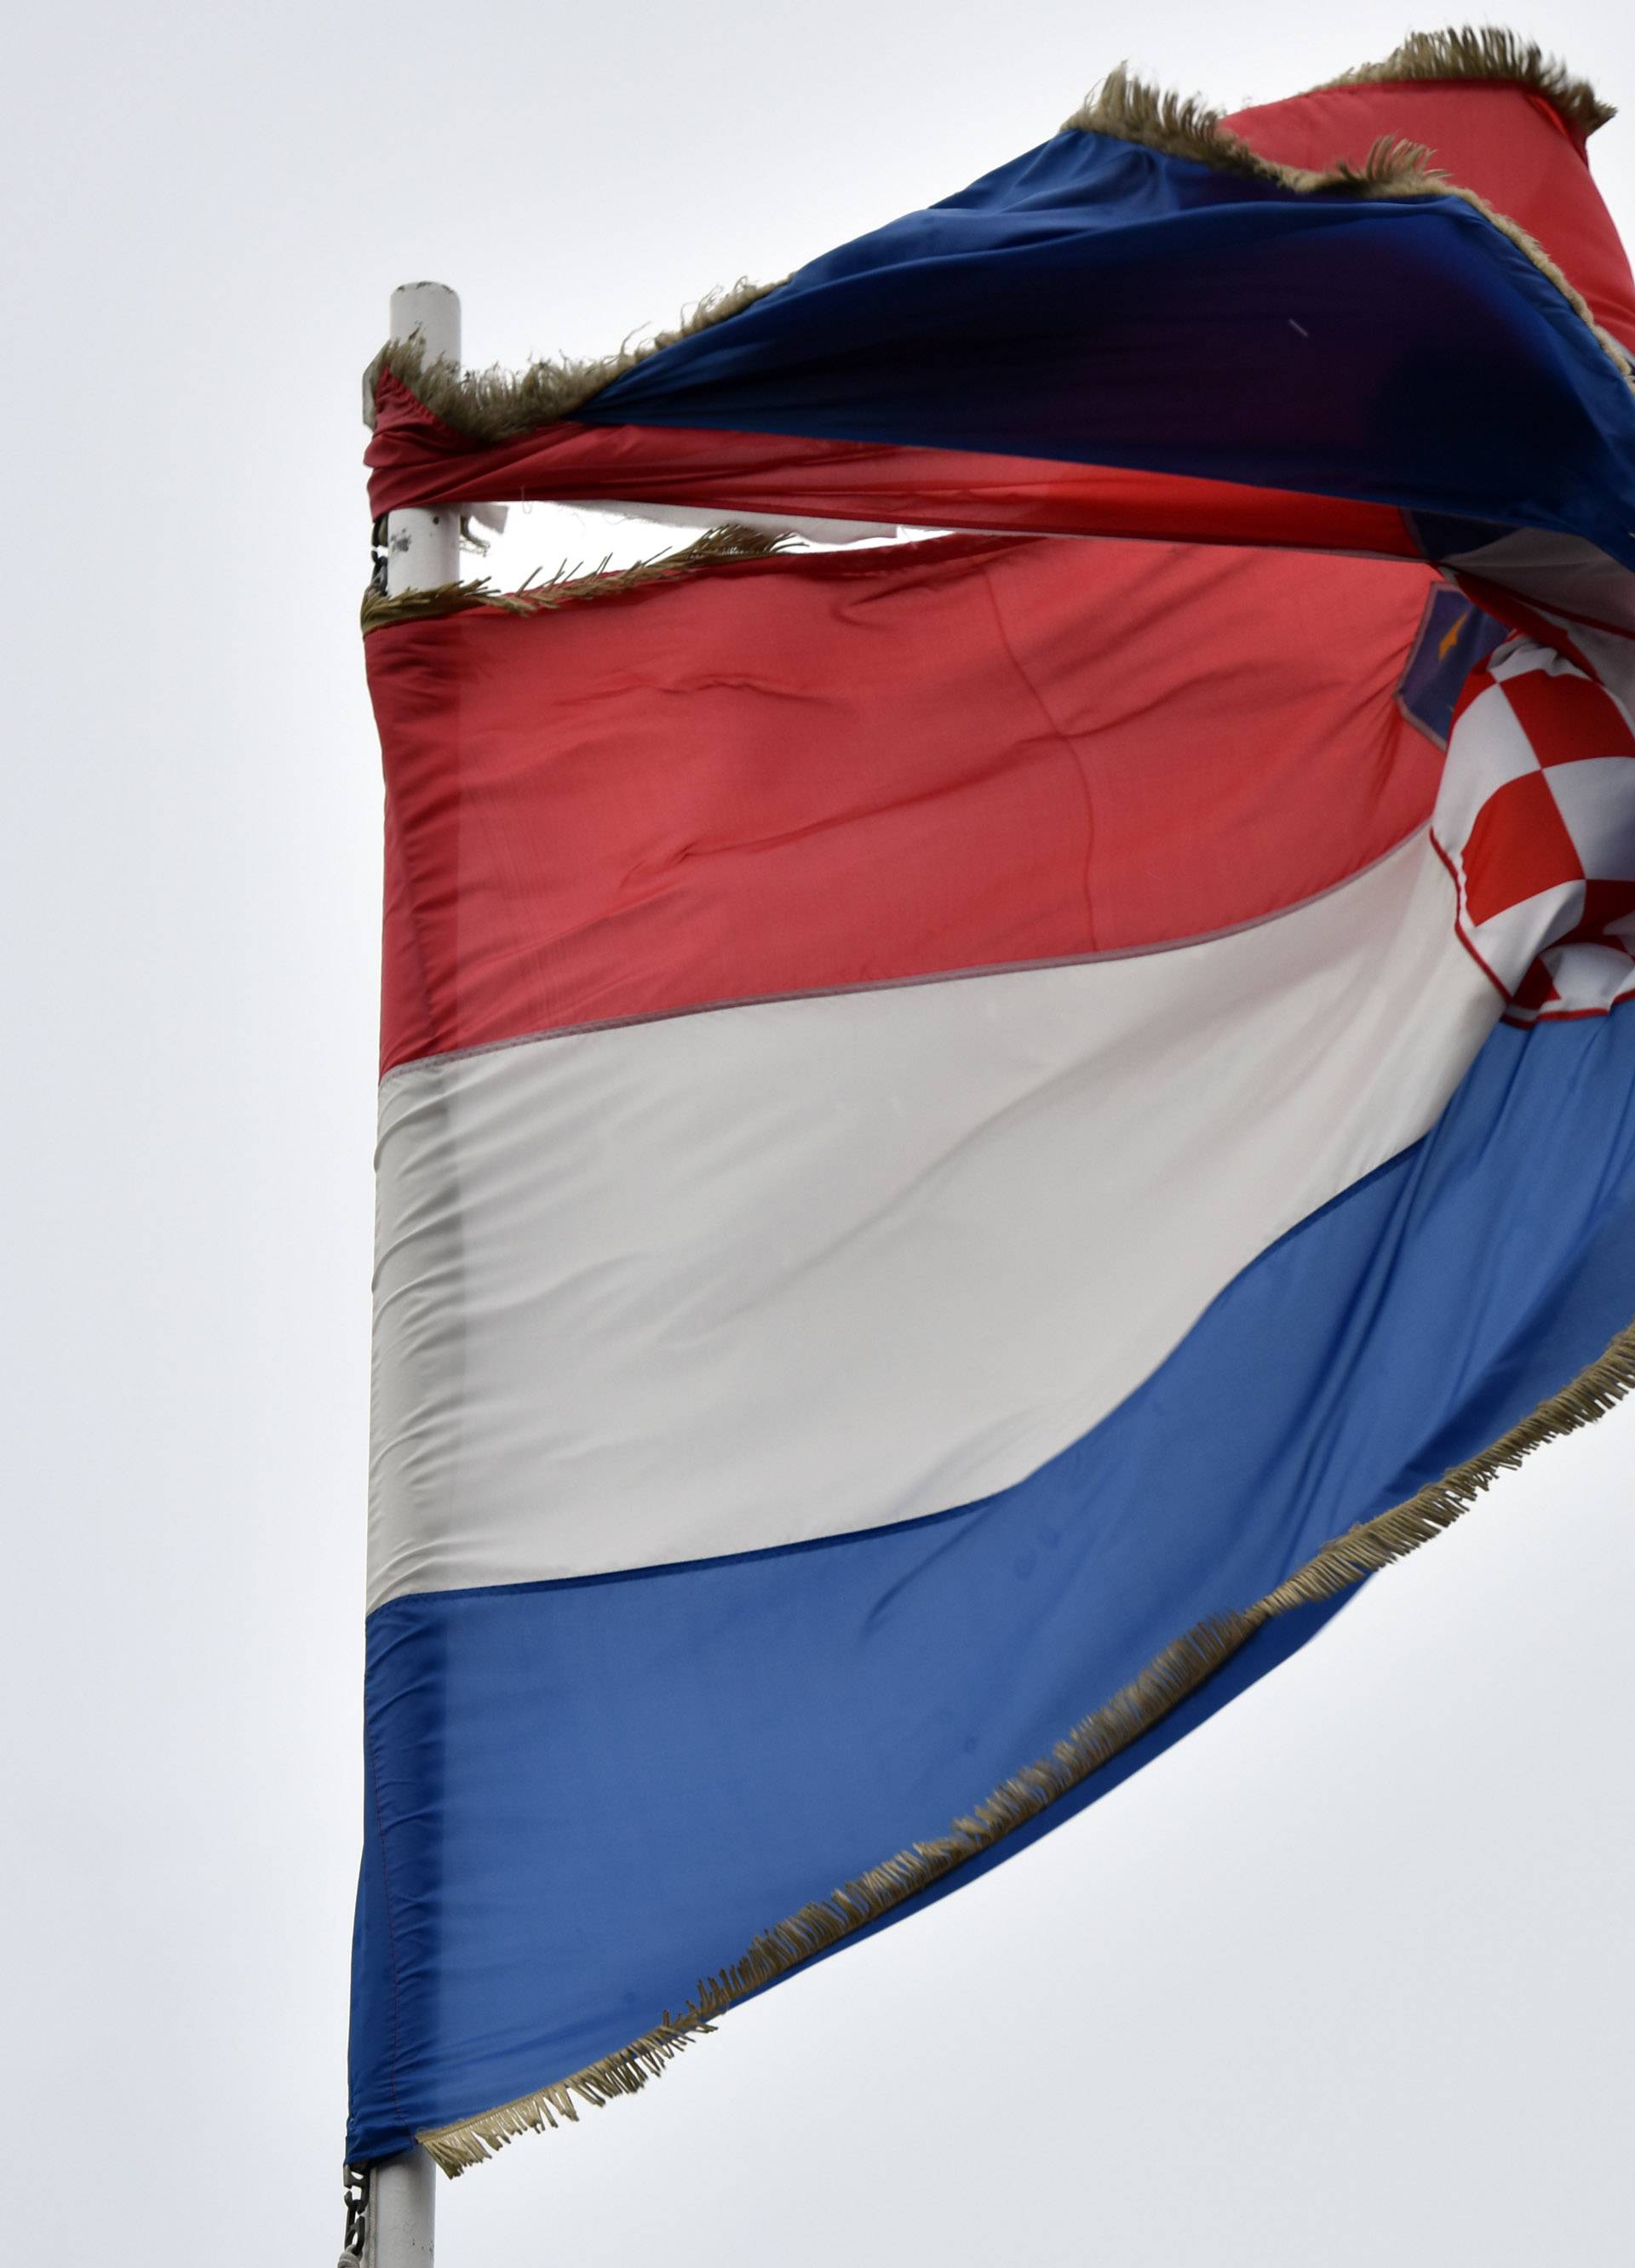 Jugo potrgalo zastavu Republike Hrvatske